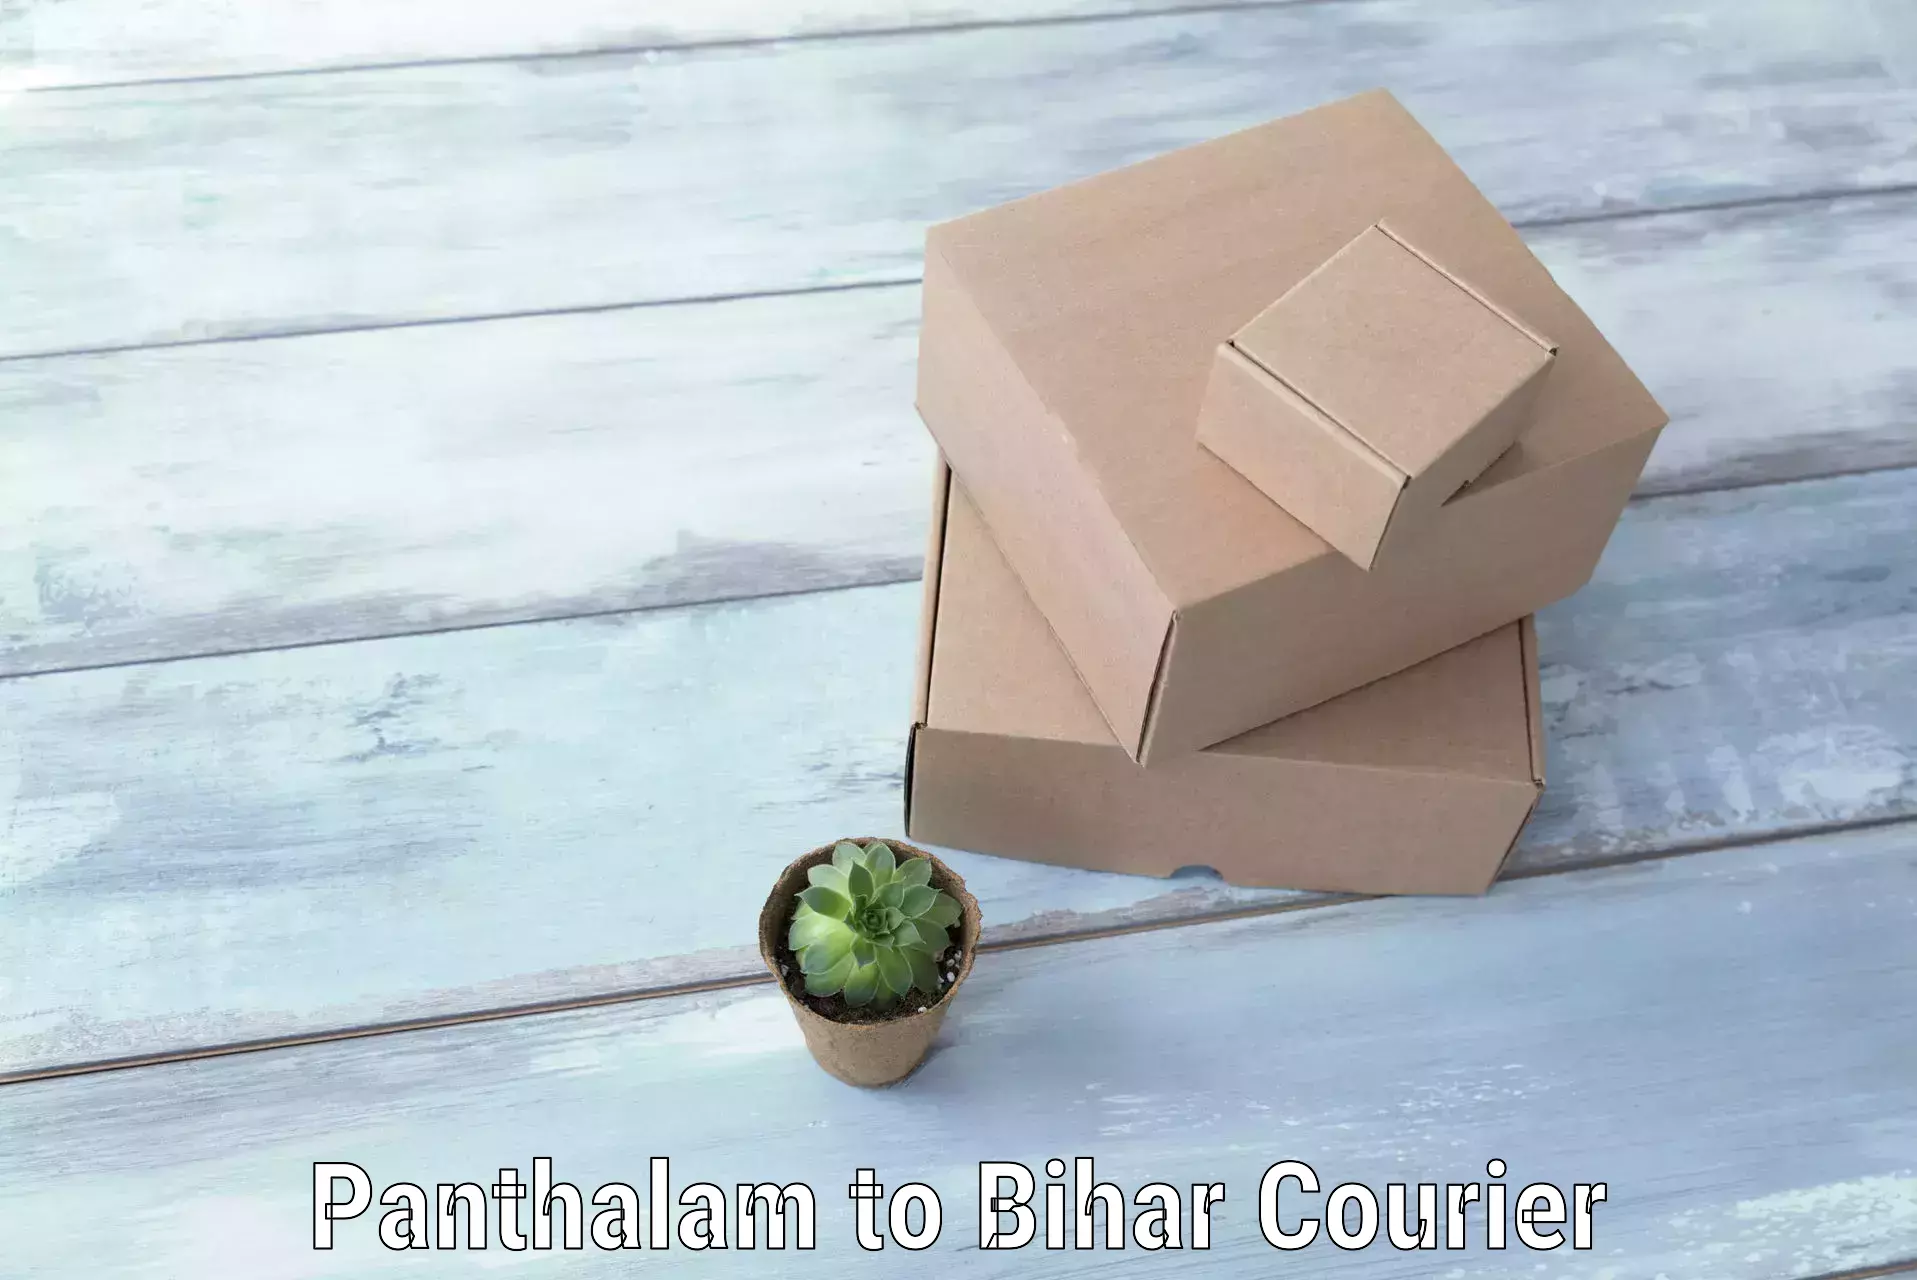 Baggage courier FAQs Panthalam to Alamnagar